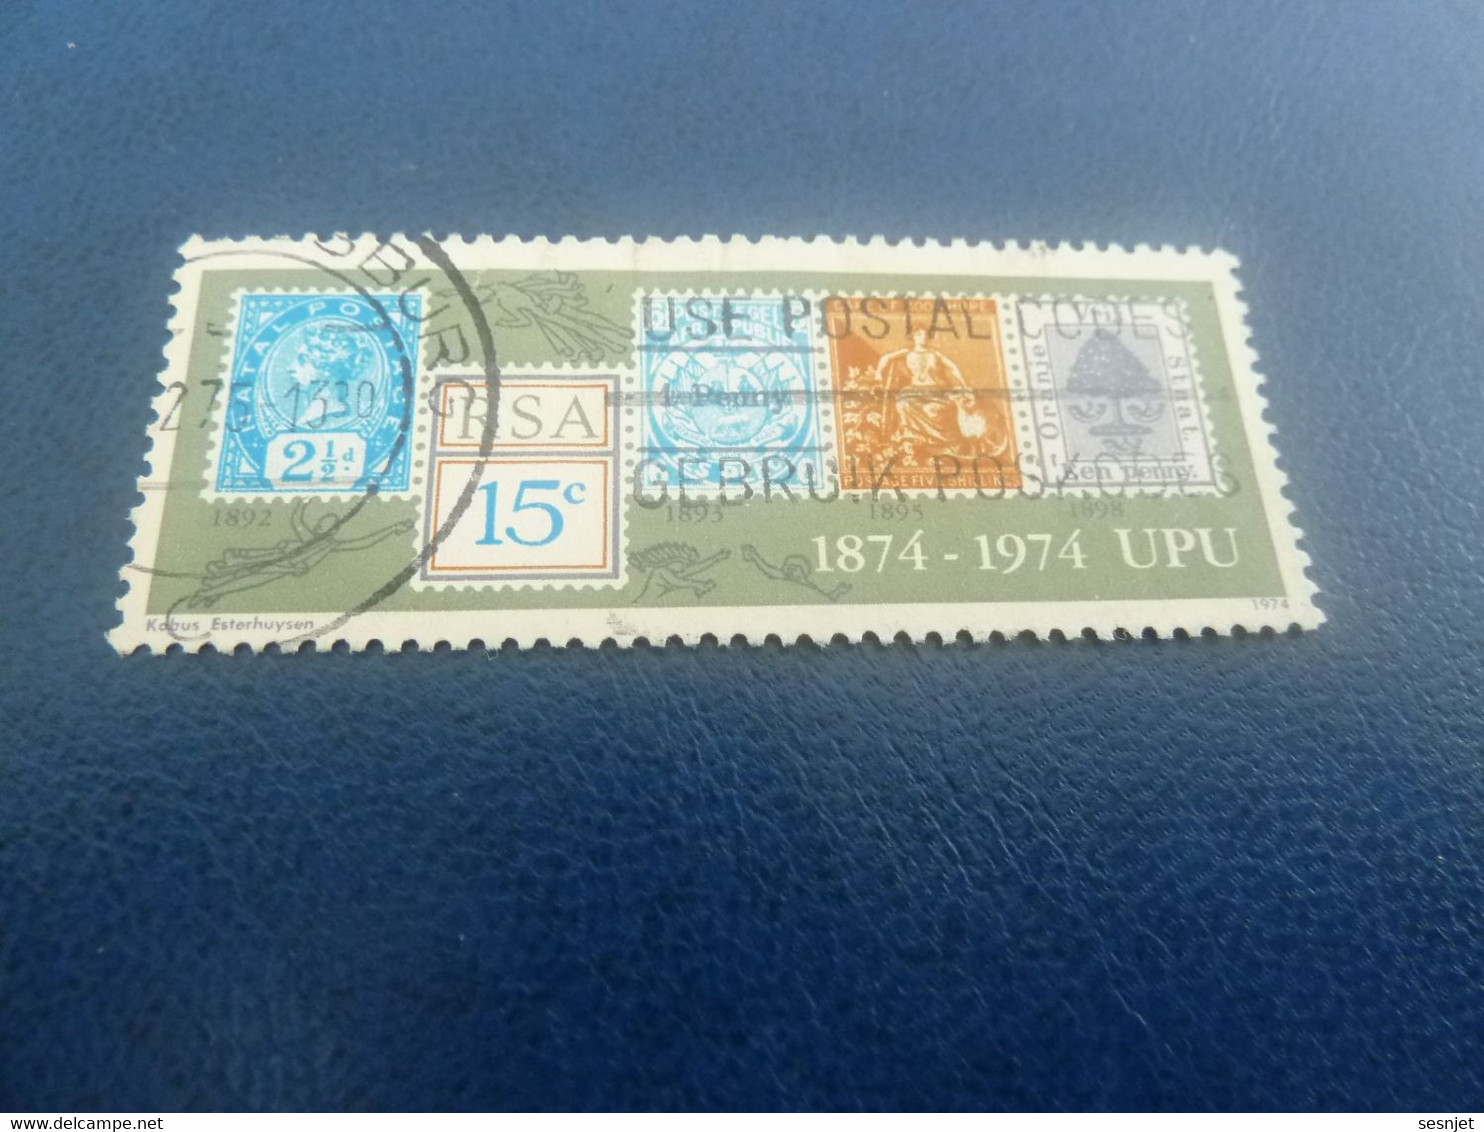 Rsa - 1874-1974 - Upu - 15 C. - Multicolore - Oblitéré - Année 1974 - - Used Stamps